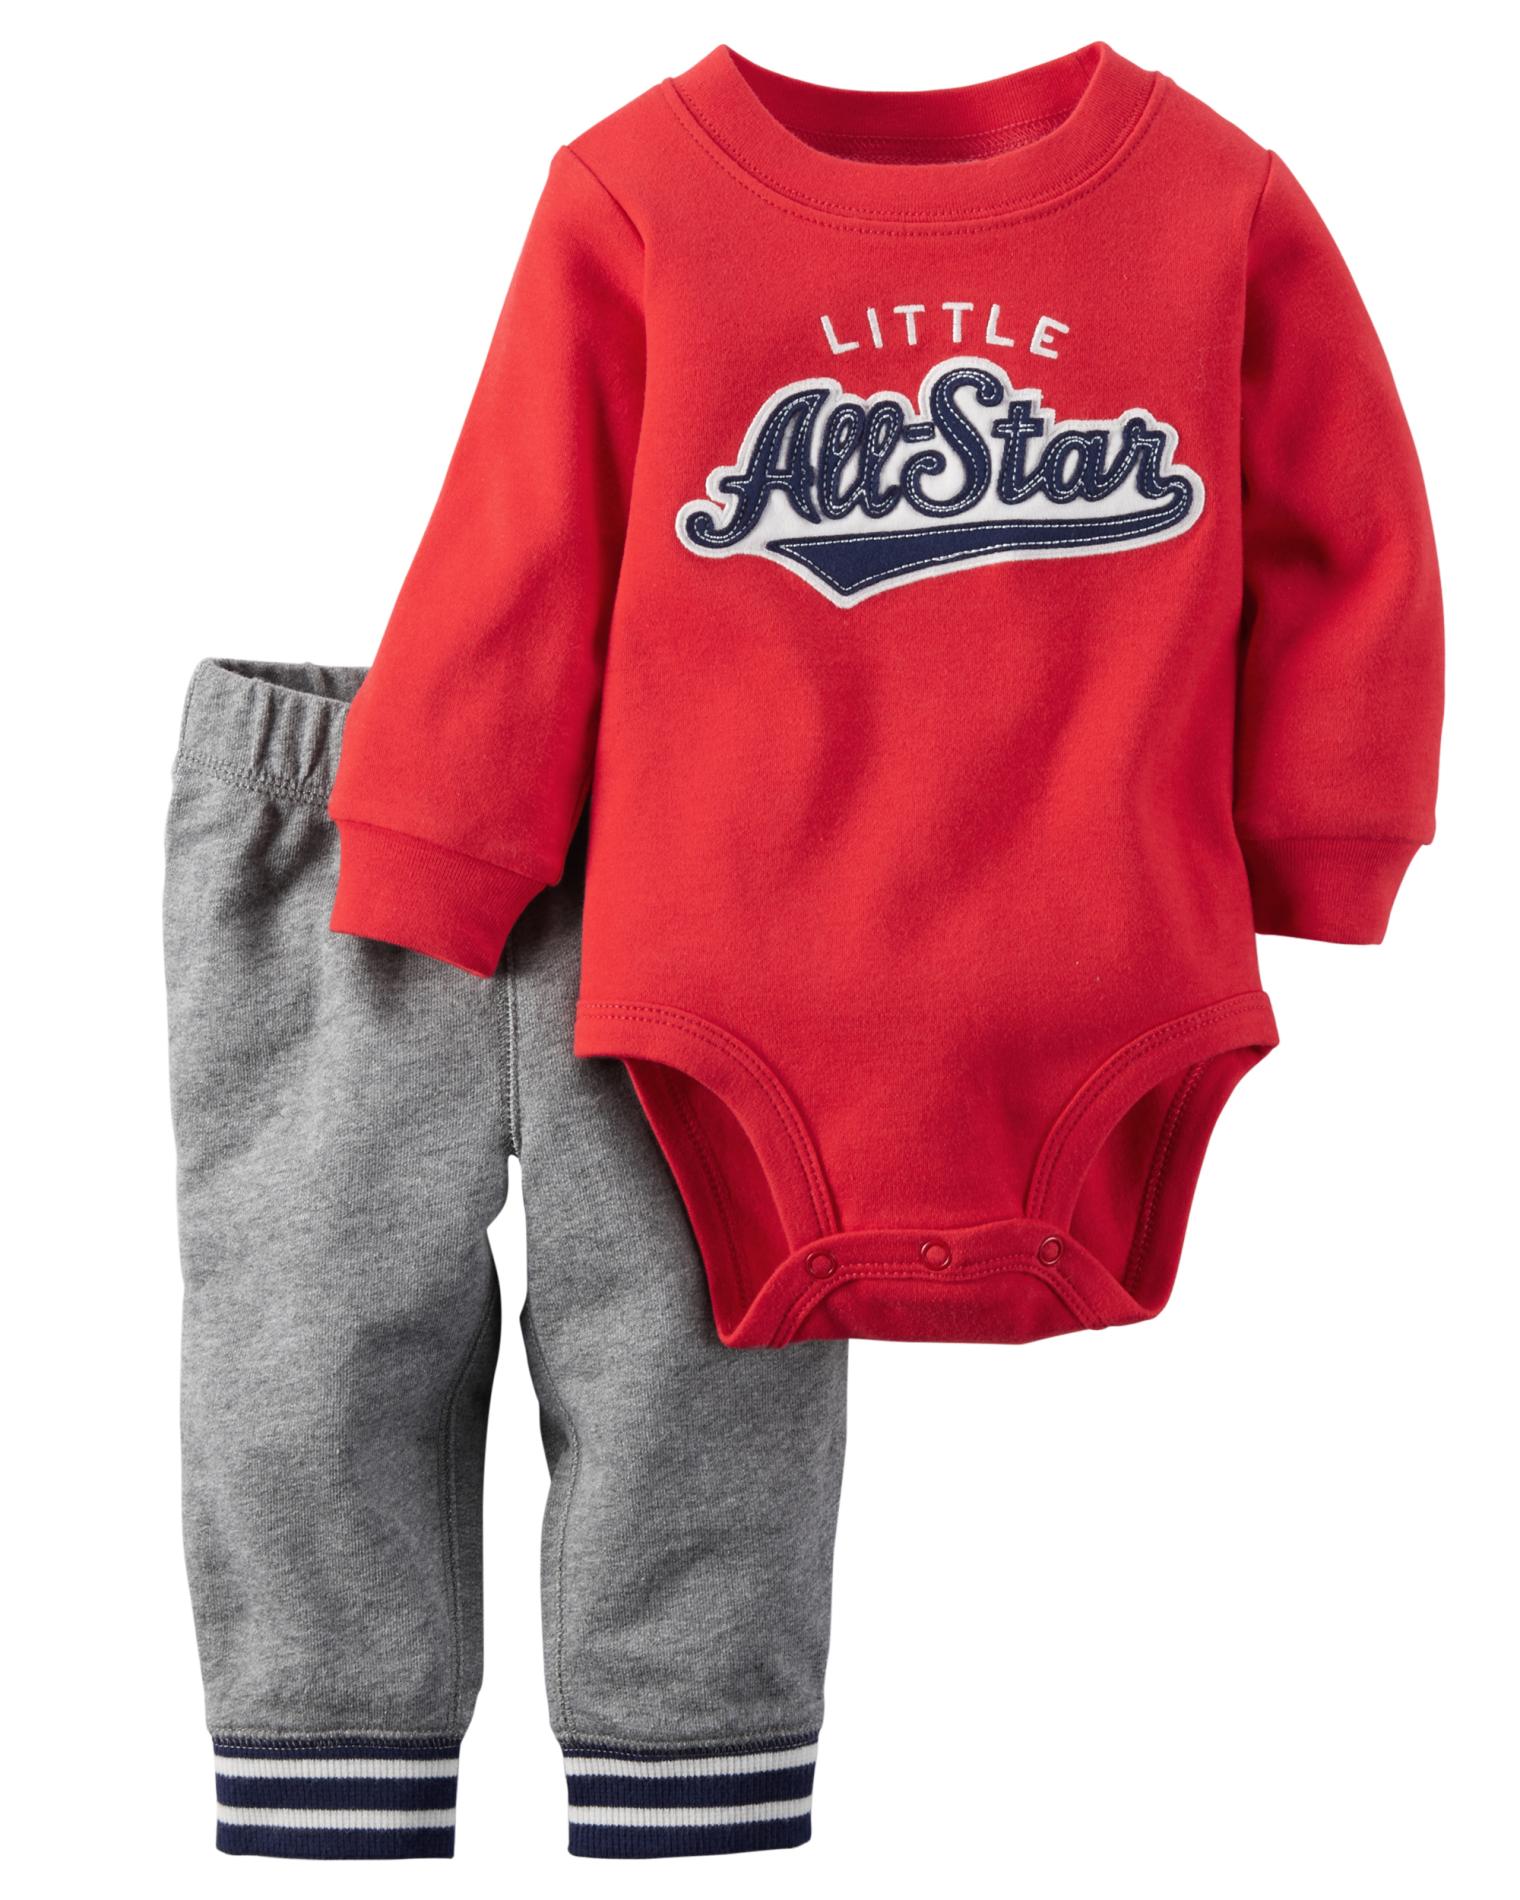 Carter's Newborn & Infant Boys' Bodysuit & Pants - Little All-Star